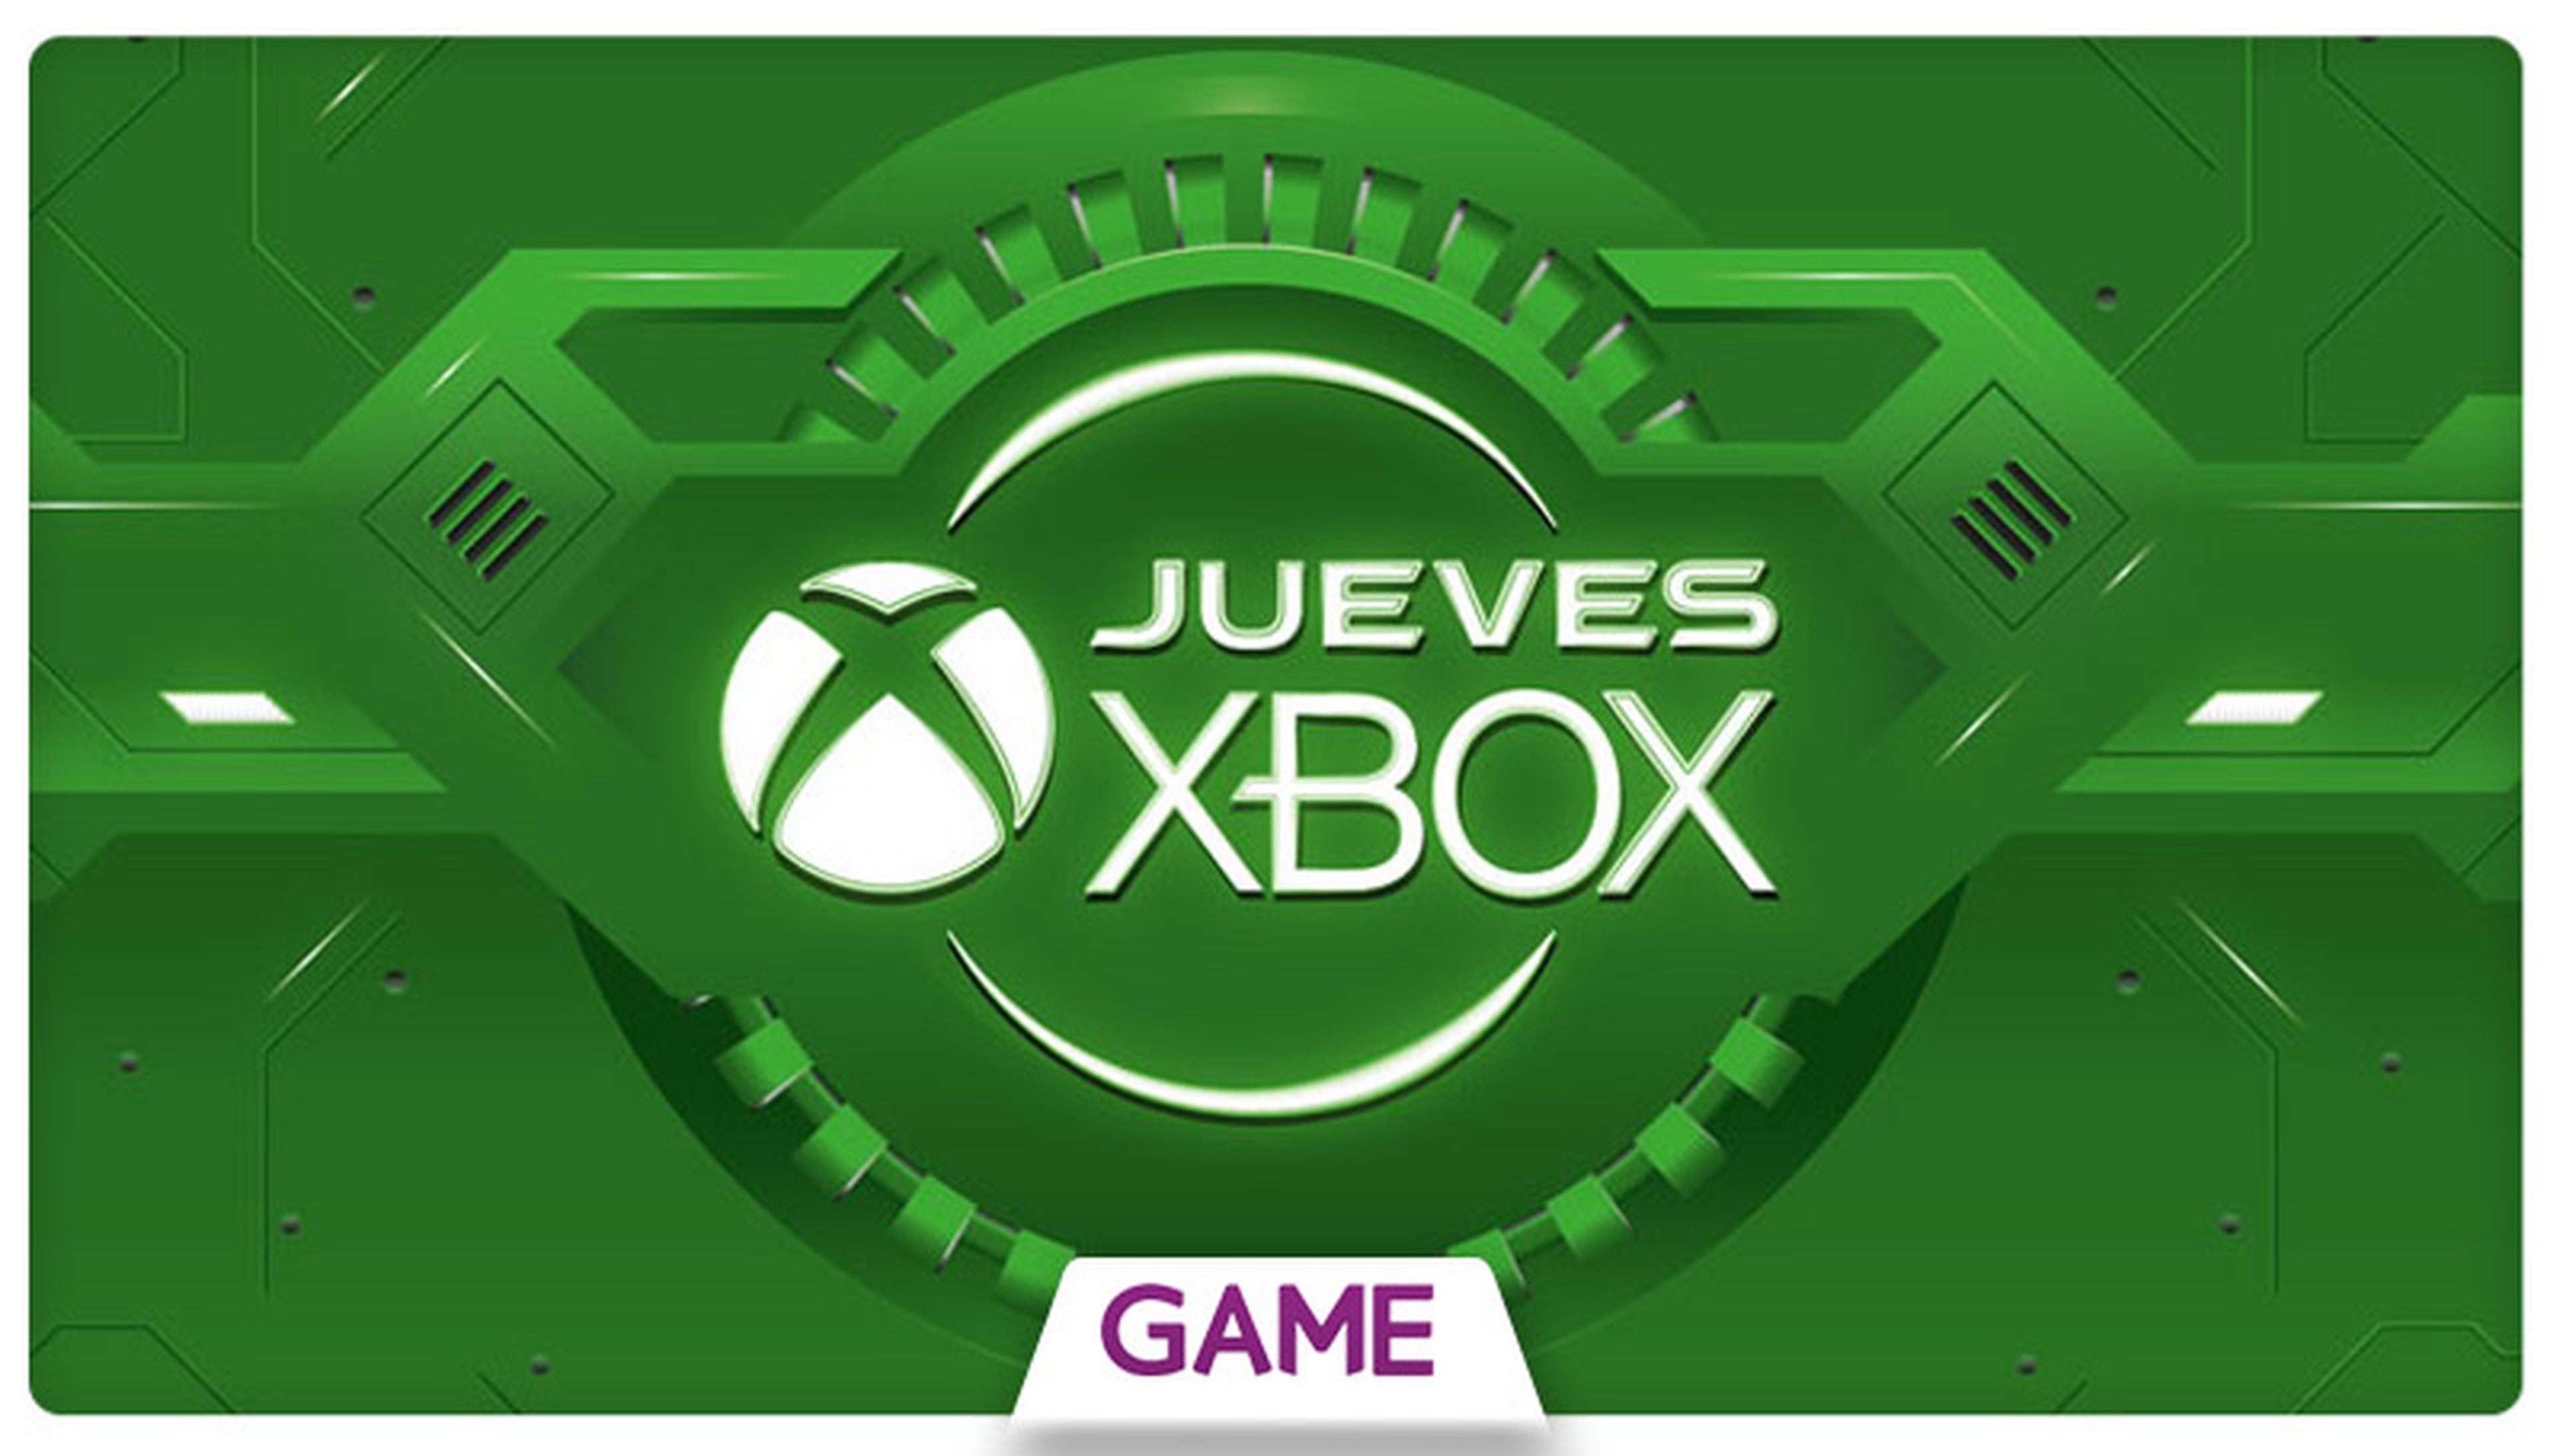 Jueves Xbox en GAME: Ofertas del 14/01/2016